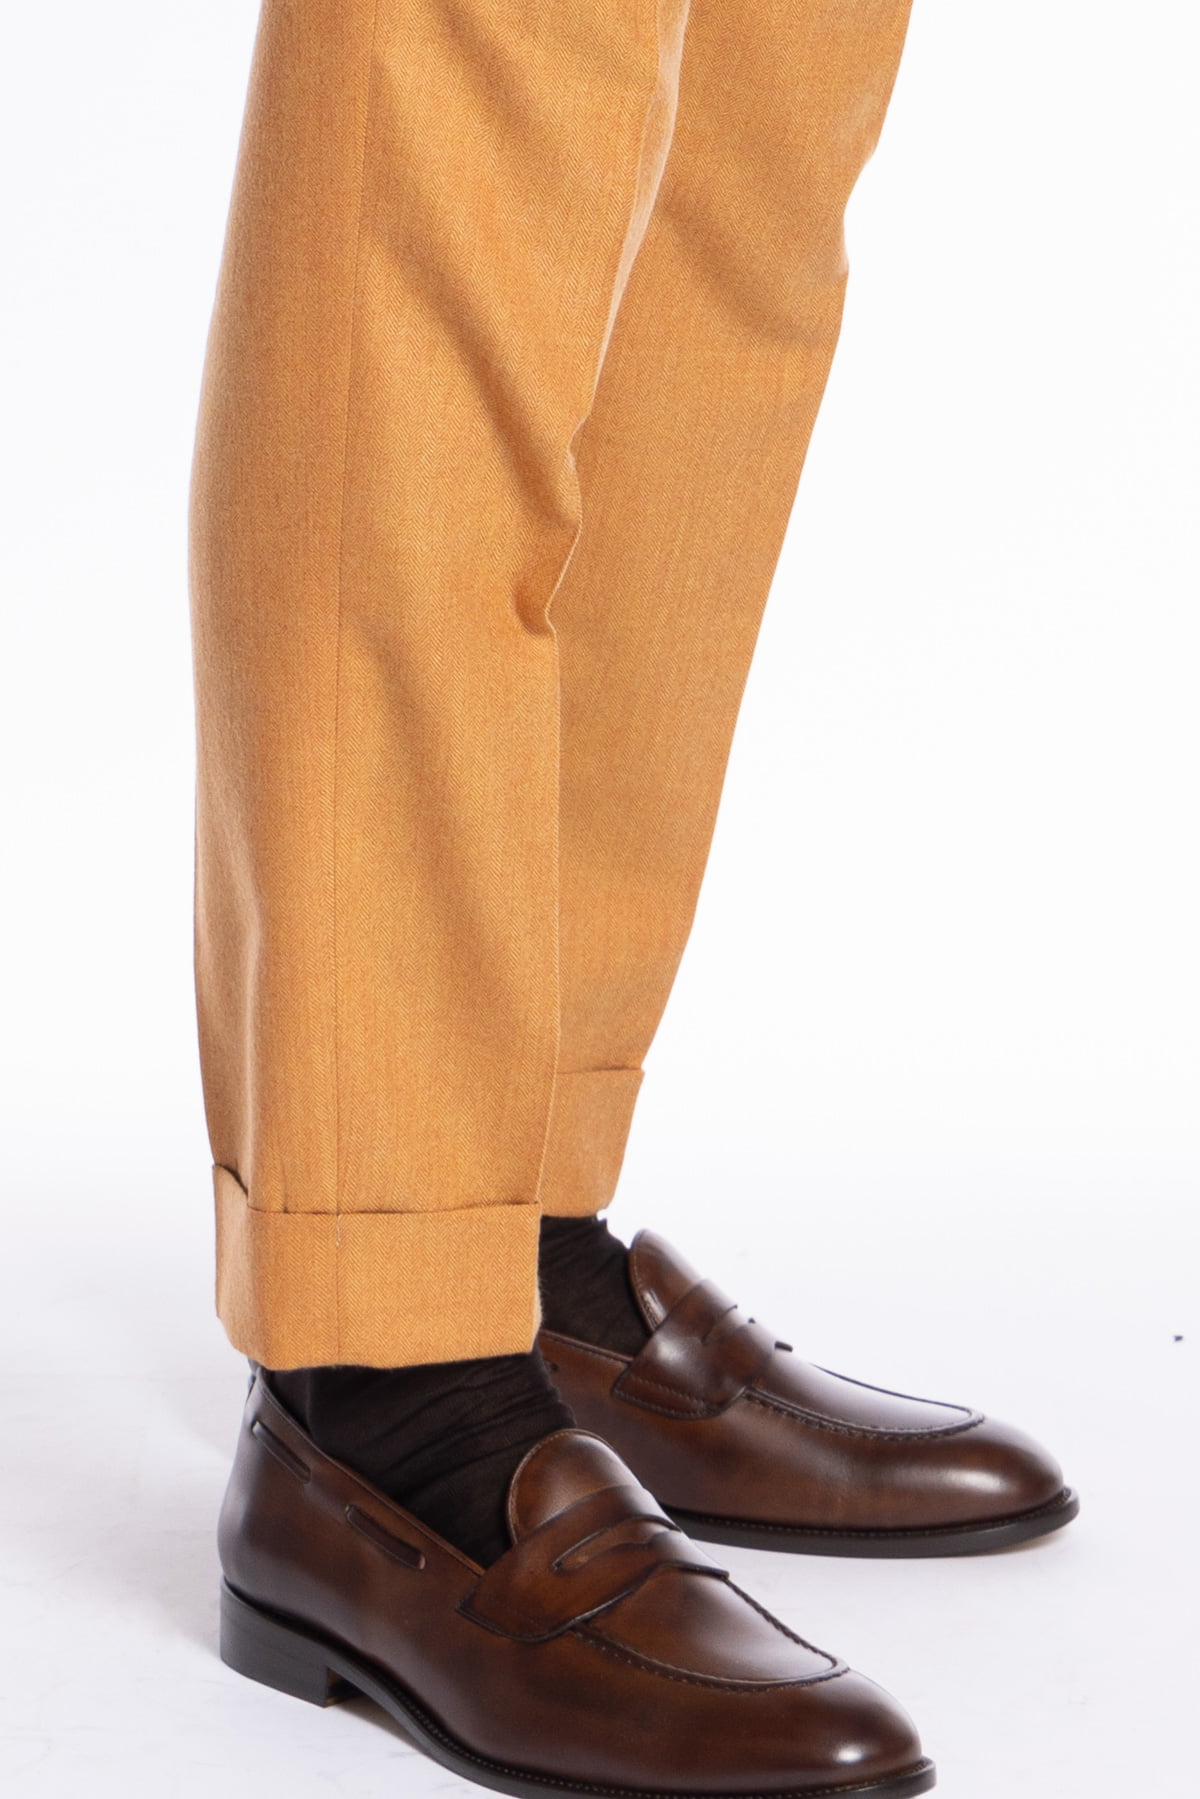 Pantalone uomo arancio spigato vita alta tasca america in lana flanella Holland & Sherry con doppia pinces e fibbie laterali regolabili